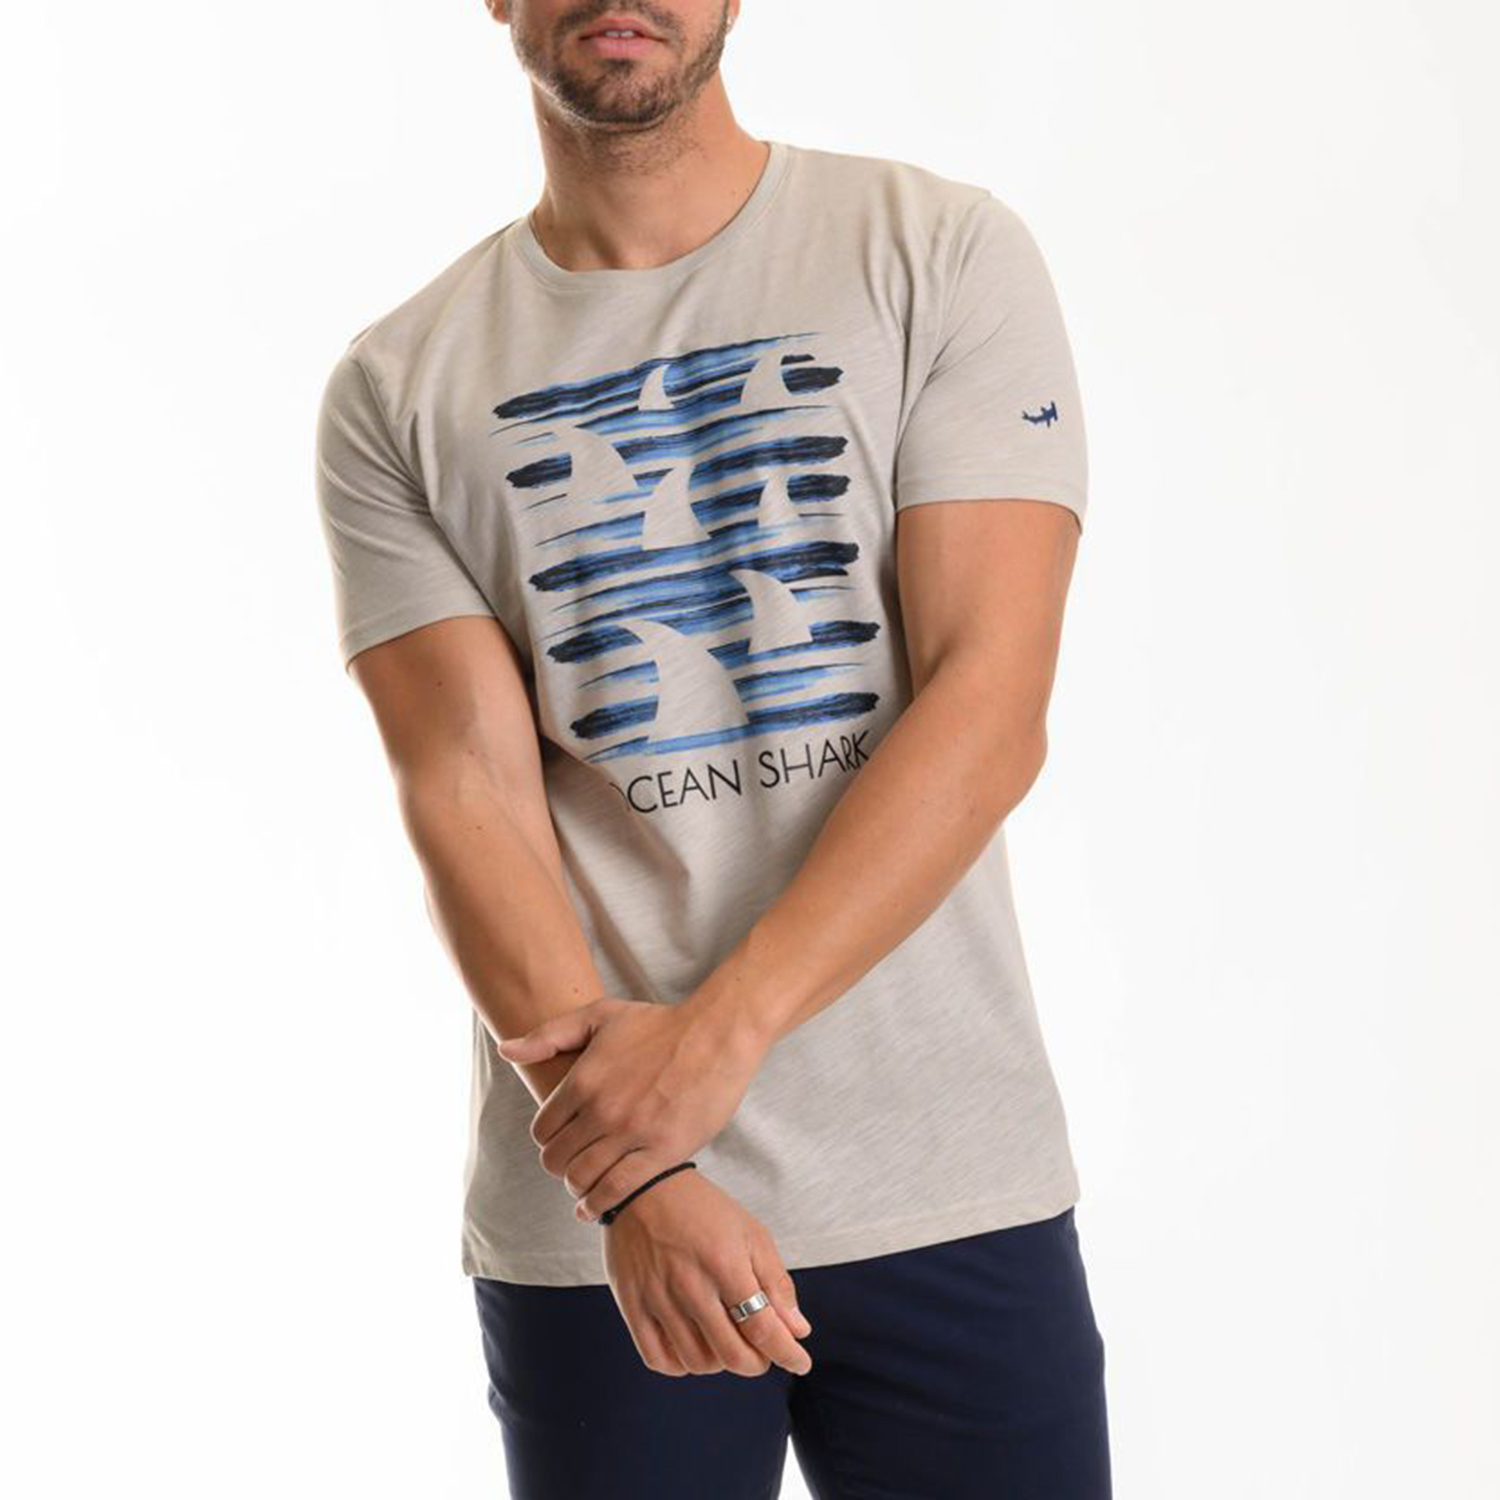 Ανδρικά/Ρούχα/Μπλούζες/Κοντομάνικες OCEAN SHARK - Ανδρικό t-shirt OCEAN SHARK εκρού